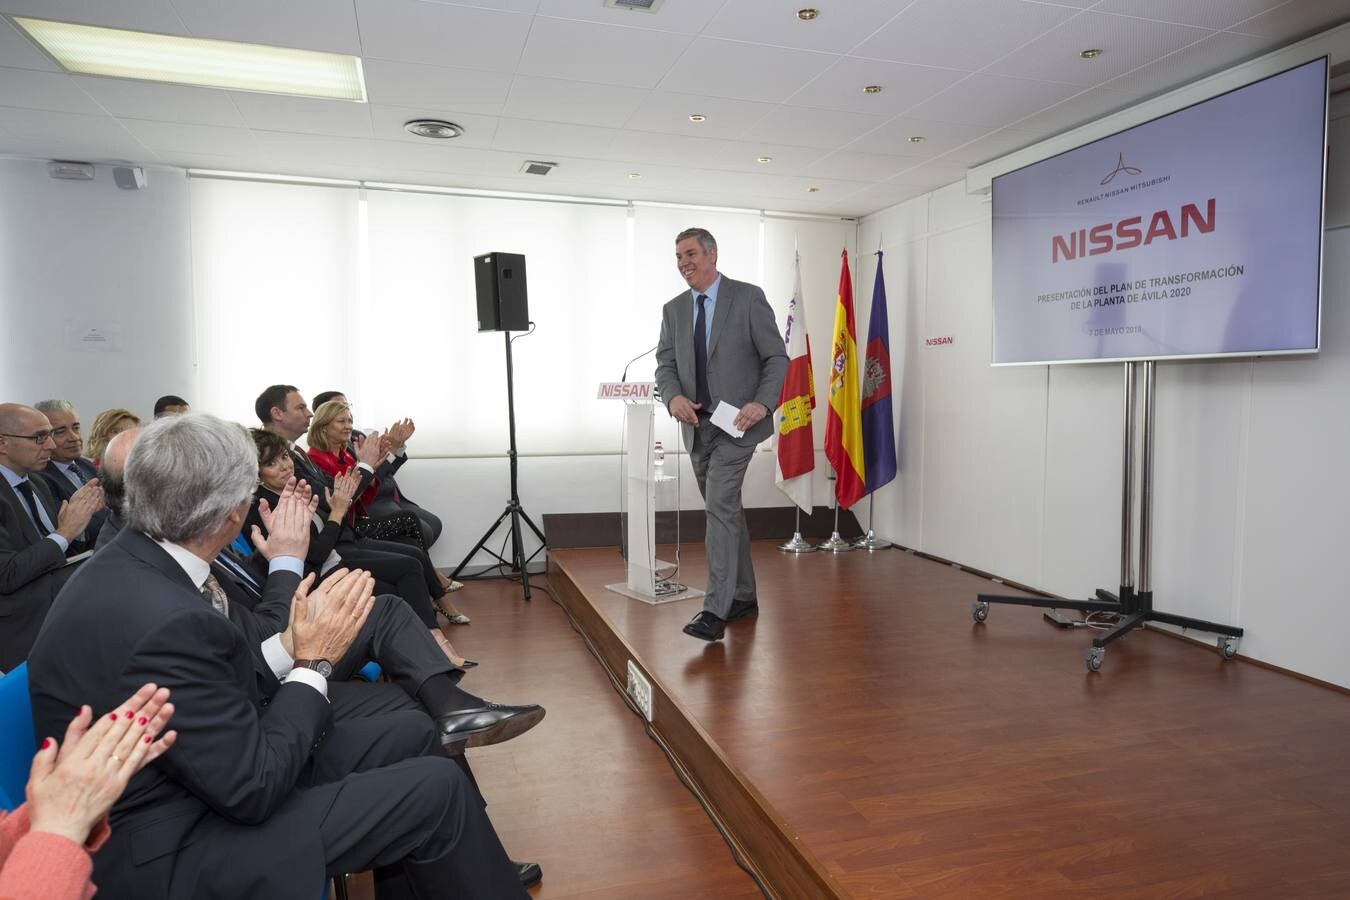 El plan contempla una inversión de 90 millones de euros, de los que la Junta de Castilla y León aportará 50 para una nave de estampación, junto a la factoría, y para un centro logístico